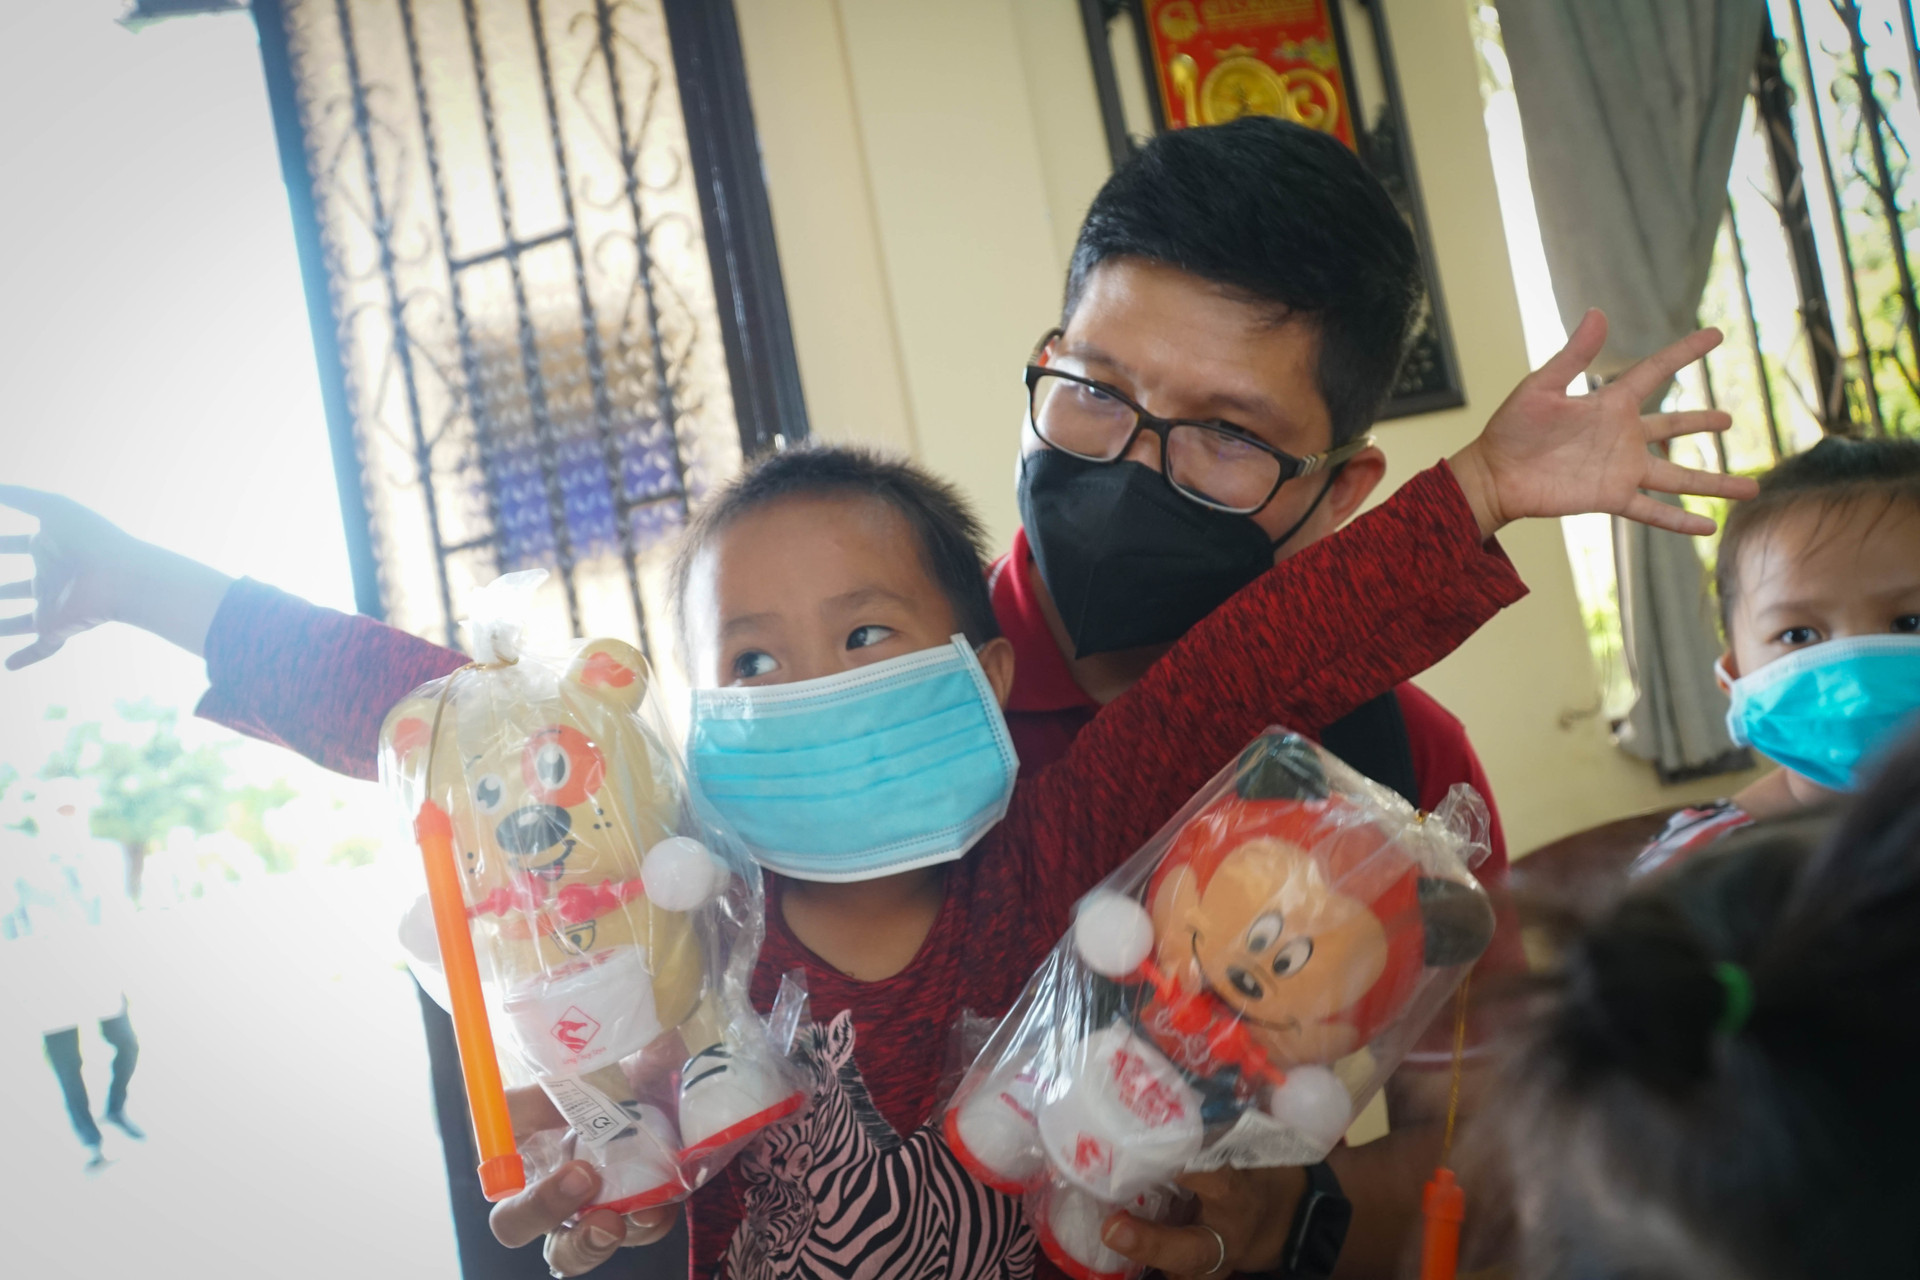 Trung tâm Công tác Xã hội Công đoàn thành phố - Liên đoàn Lao động TPHCM đến thăm và trao quà cho trẻ em tại trung tâm Mai Hòa (huyện Củ Chi).